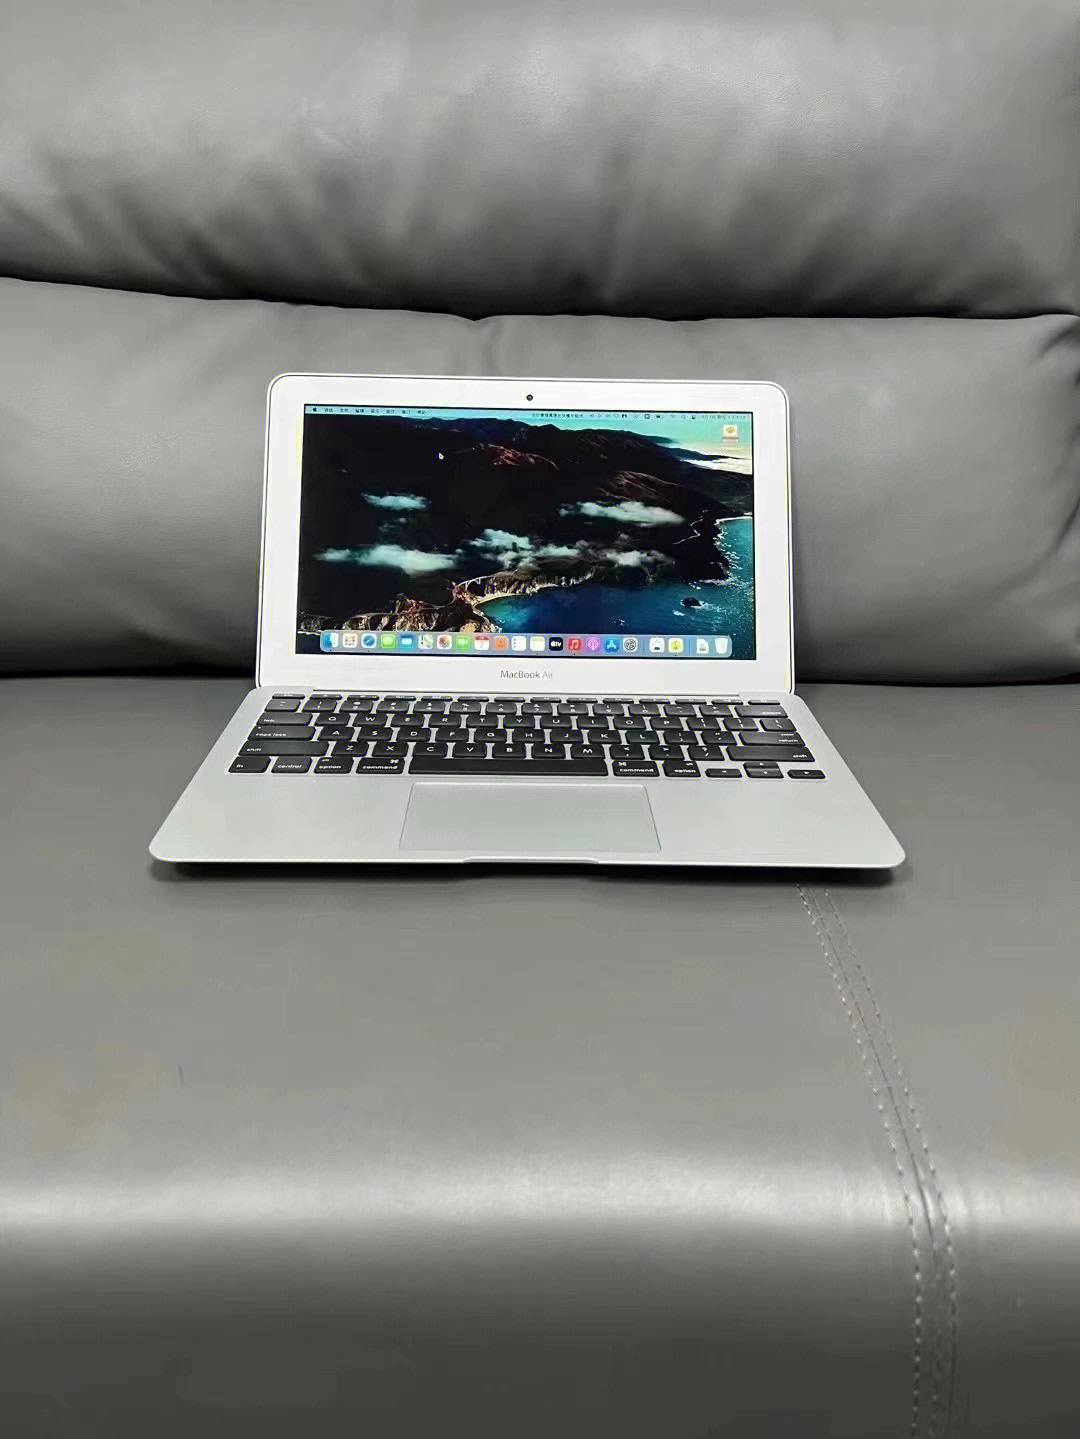 901799苹果macbook air 2015款11寸笔记本电脑型号vm2,i5